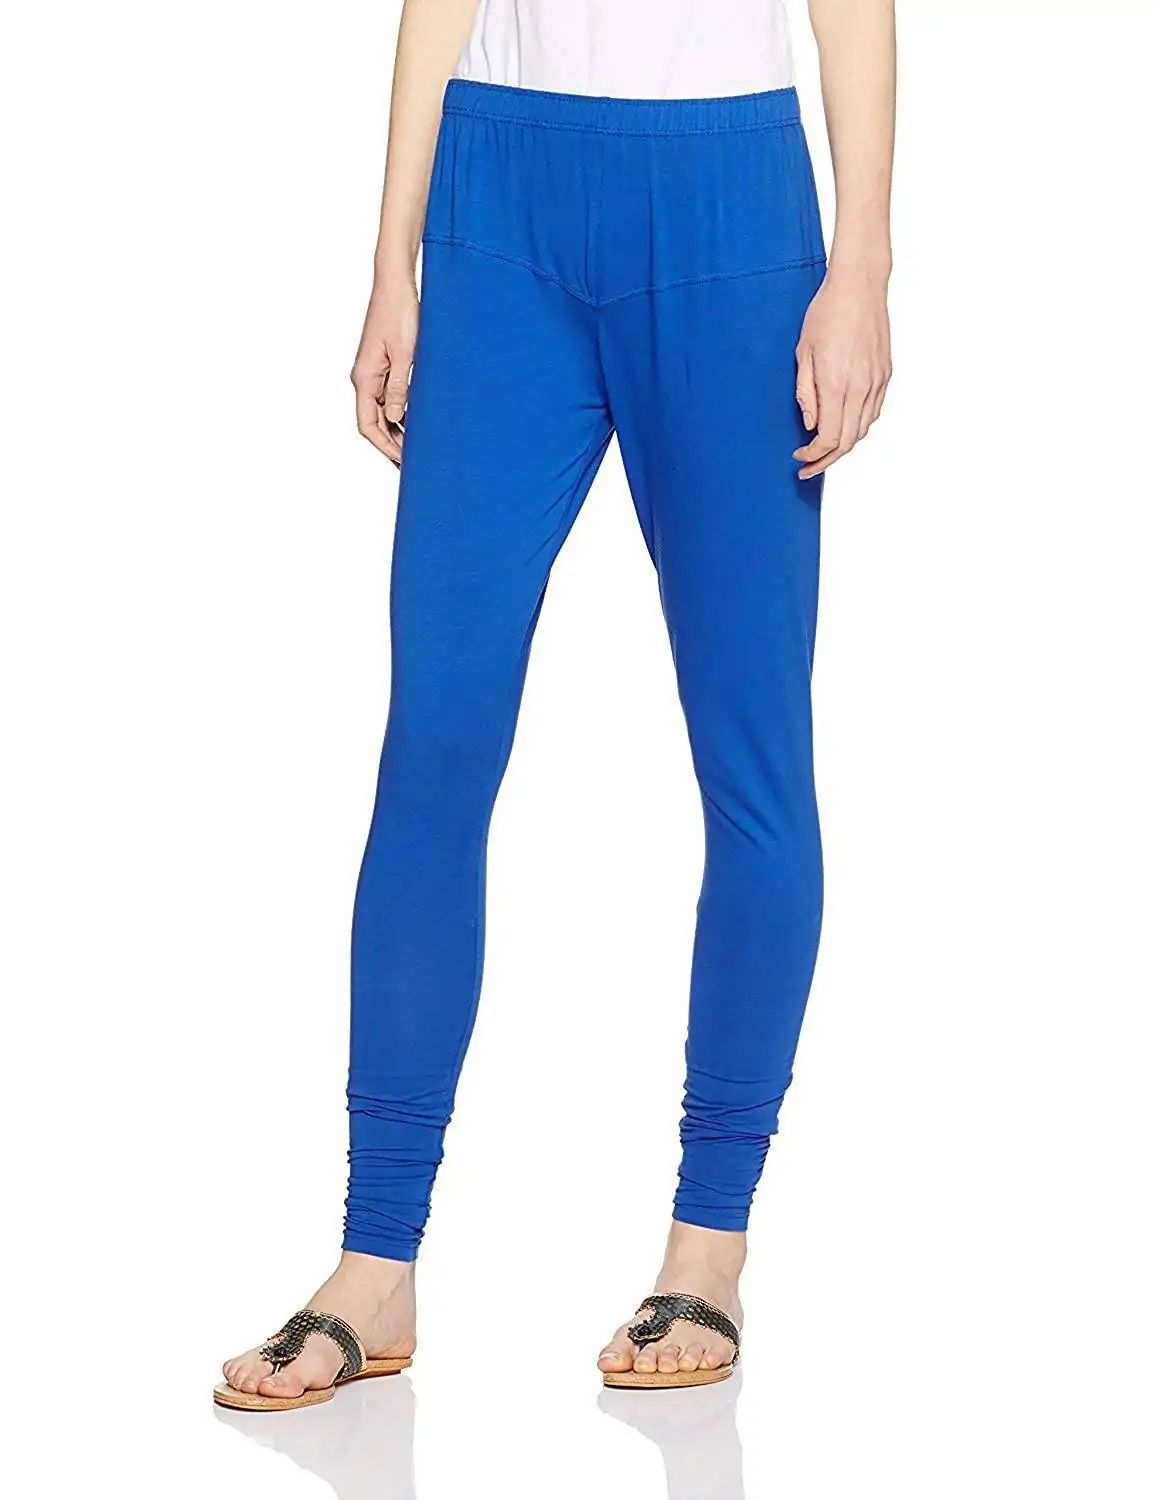 Royal blue color cotton leggings